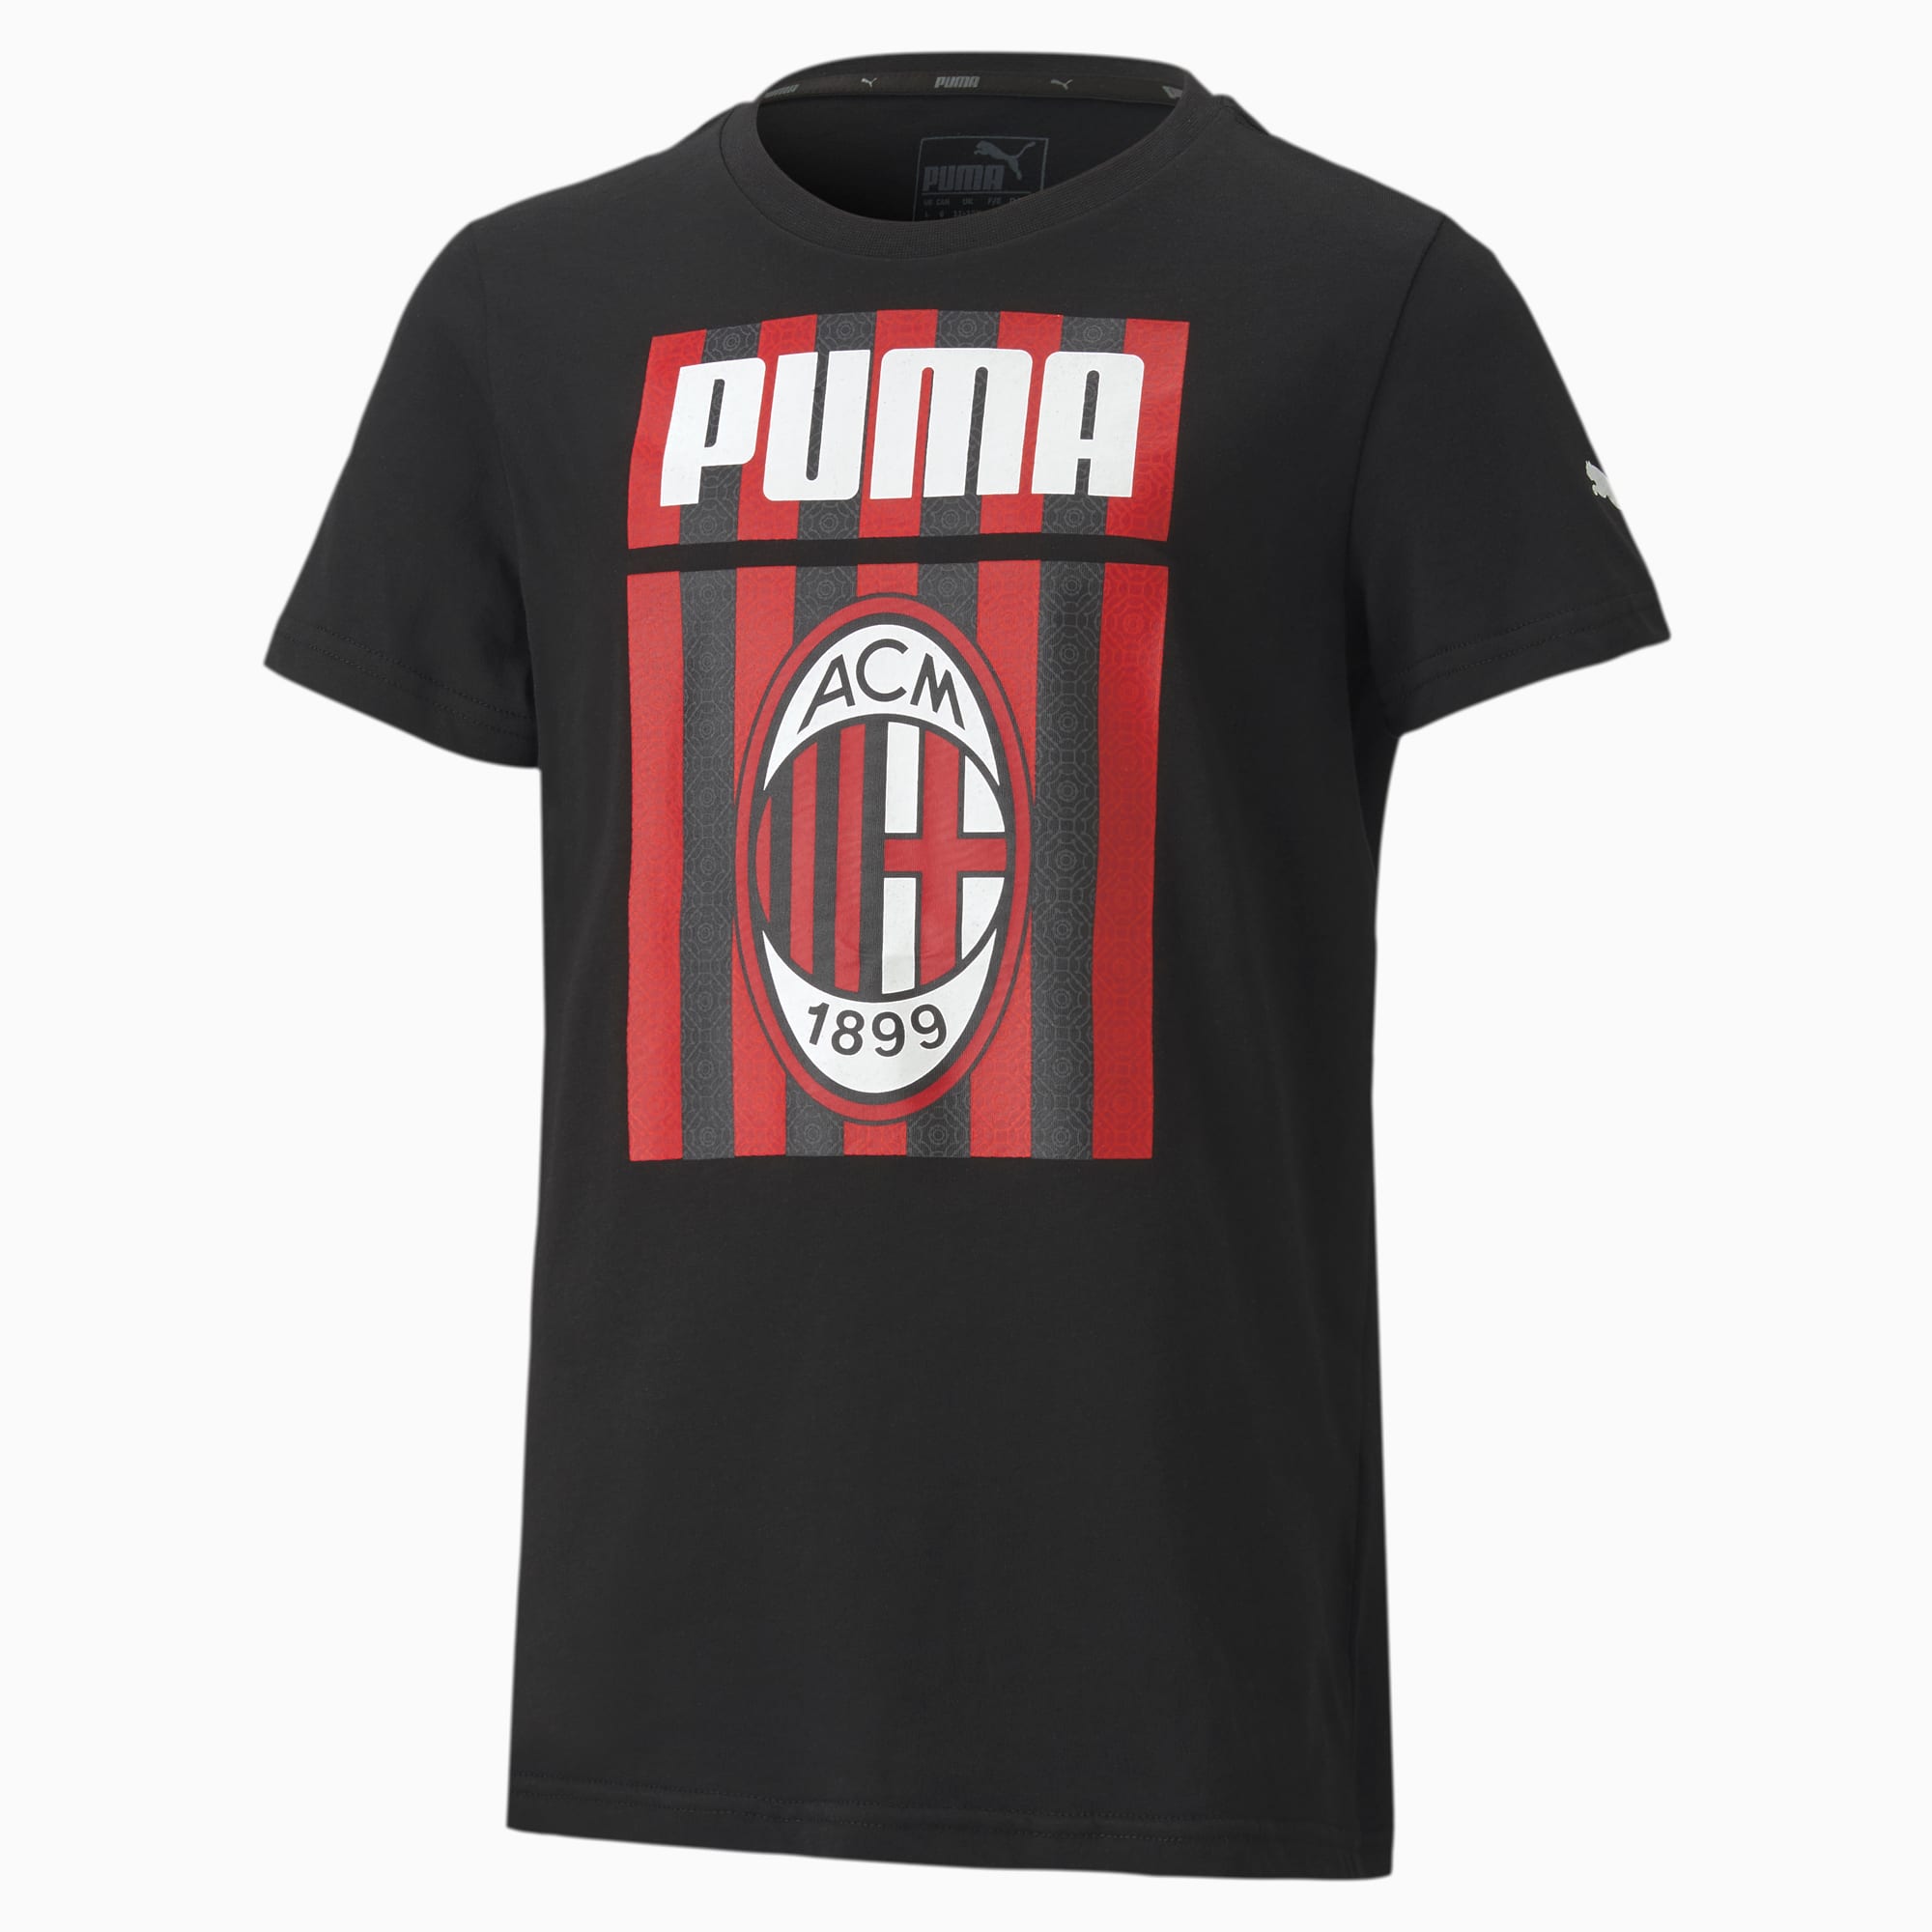 Image of PUMA AC Milan ftblCore Graphic Youth Fußball T-Shirt Für Kinder | Mit Aucun | Schwarz/Rot | Größe: 164